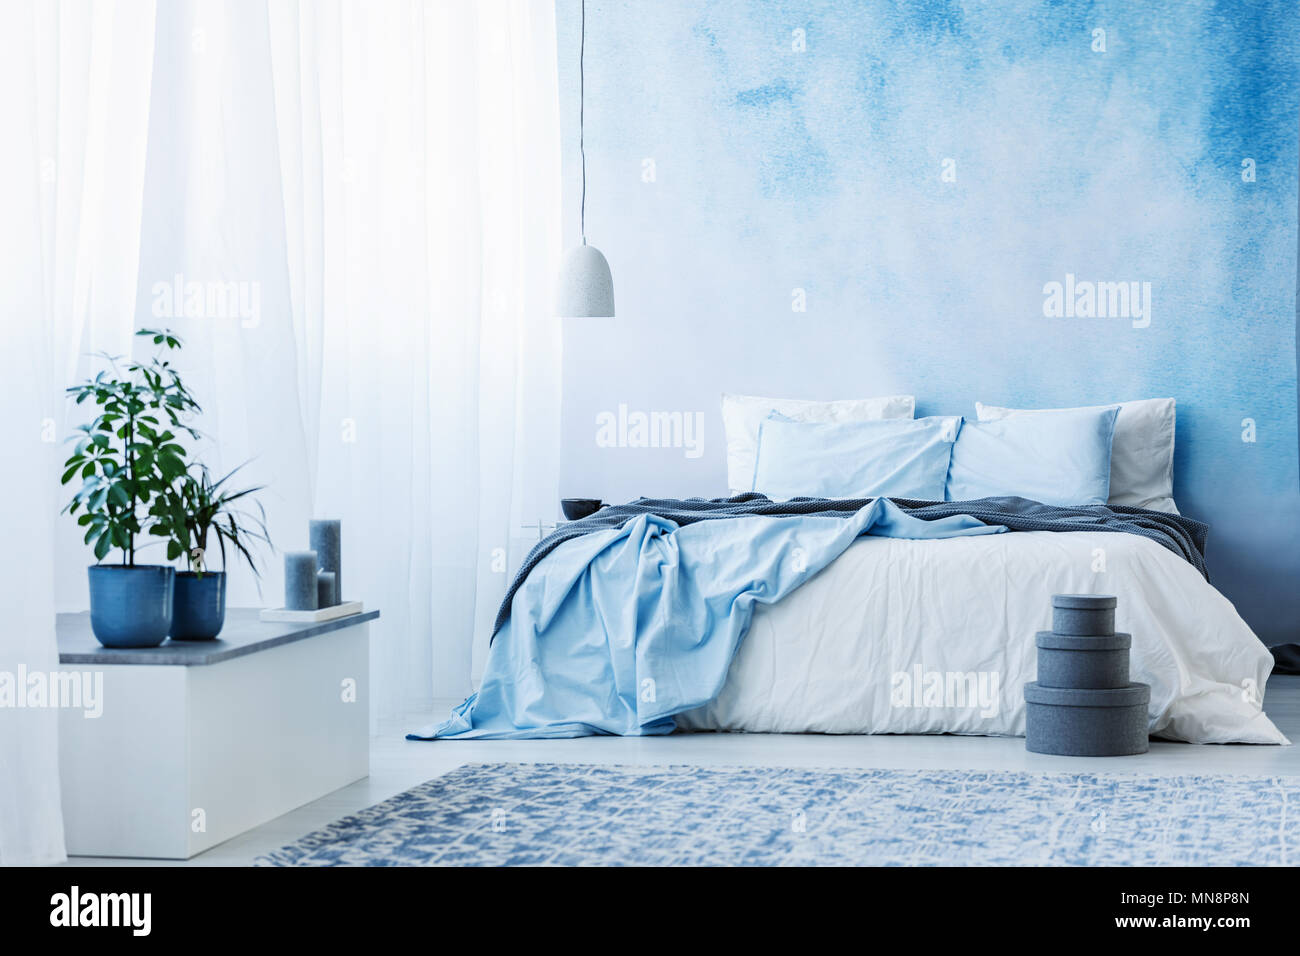 Azul cielo interior del dormitorio con cama doble, plantas y cuadros grises en el suelo Foto de stock